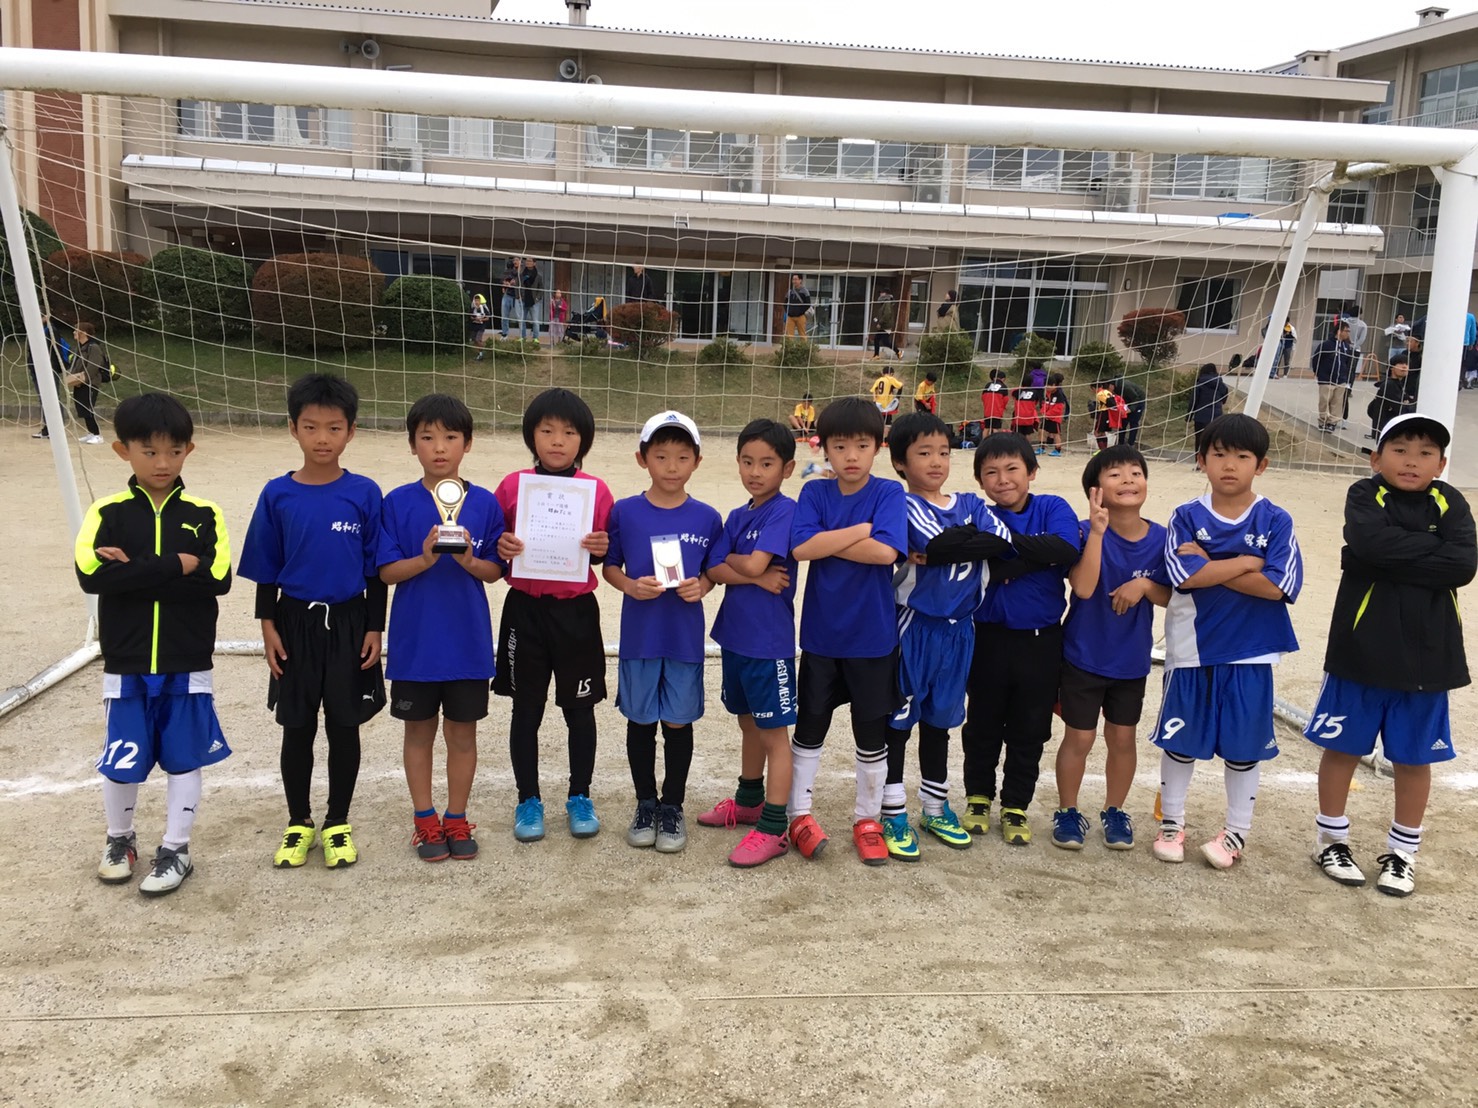 昭和ｆｃ U9高森コーシンカップ 長野県長野市u 12少年サッカークラブ